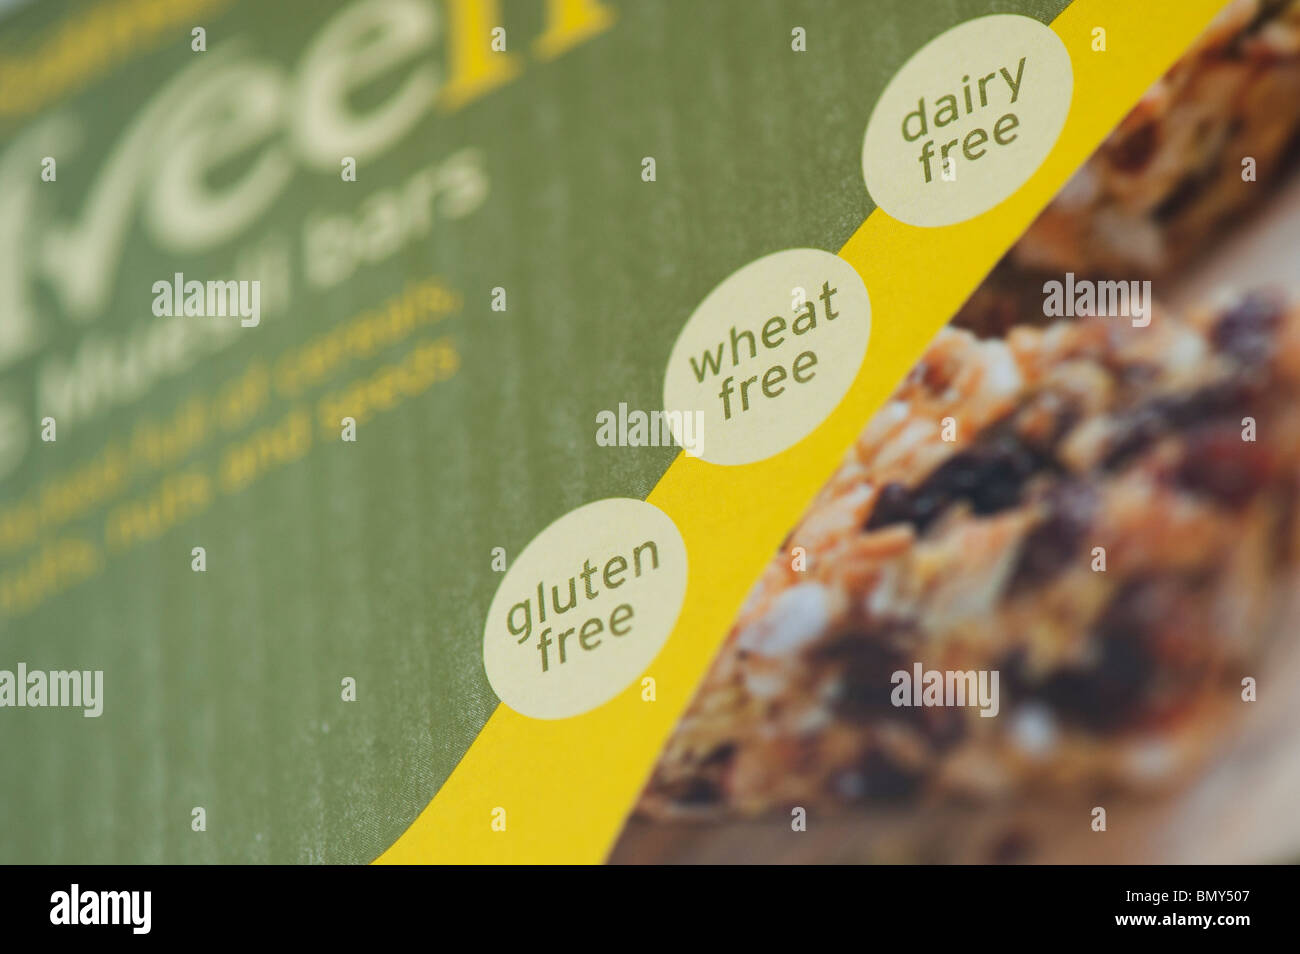 Libero di frumento, senza glutine, senza latte e derivati alimentari etichettatura di pacchetto Foto Stock